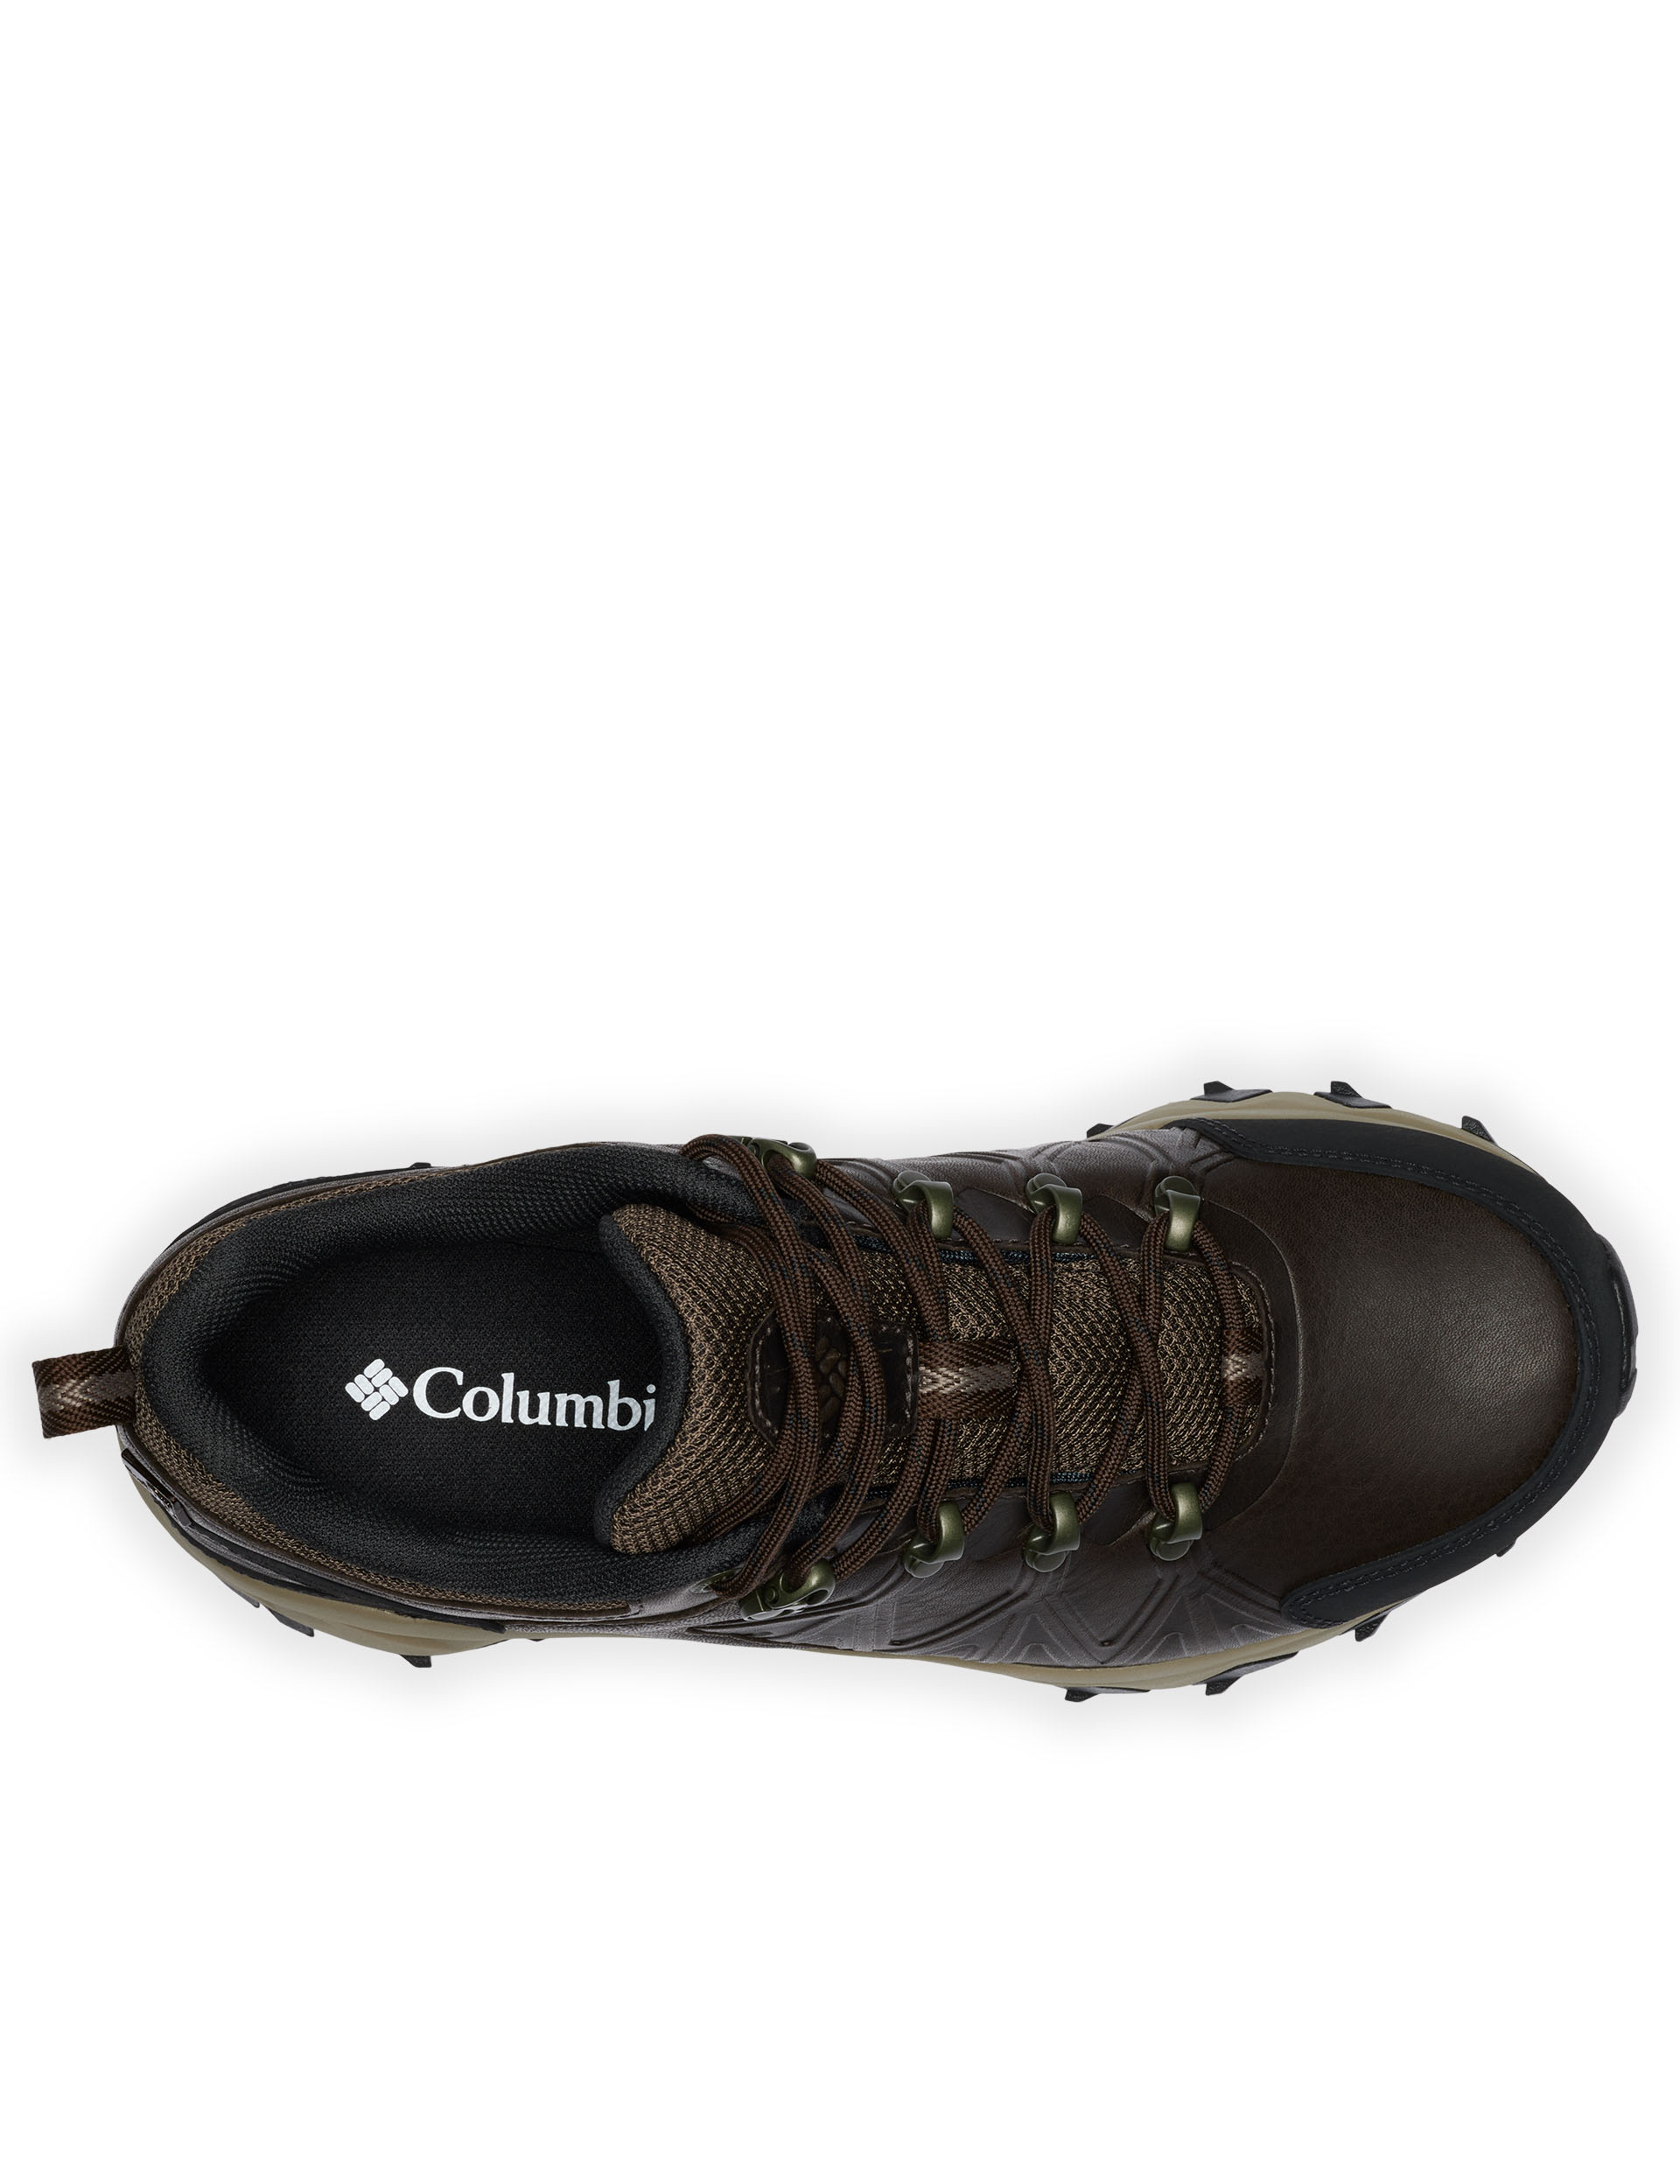 Peakfreak II OutDry Leather Walking Shoes 3 of 6